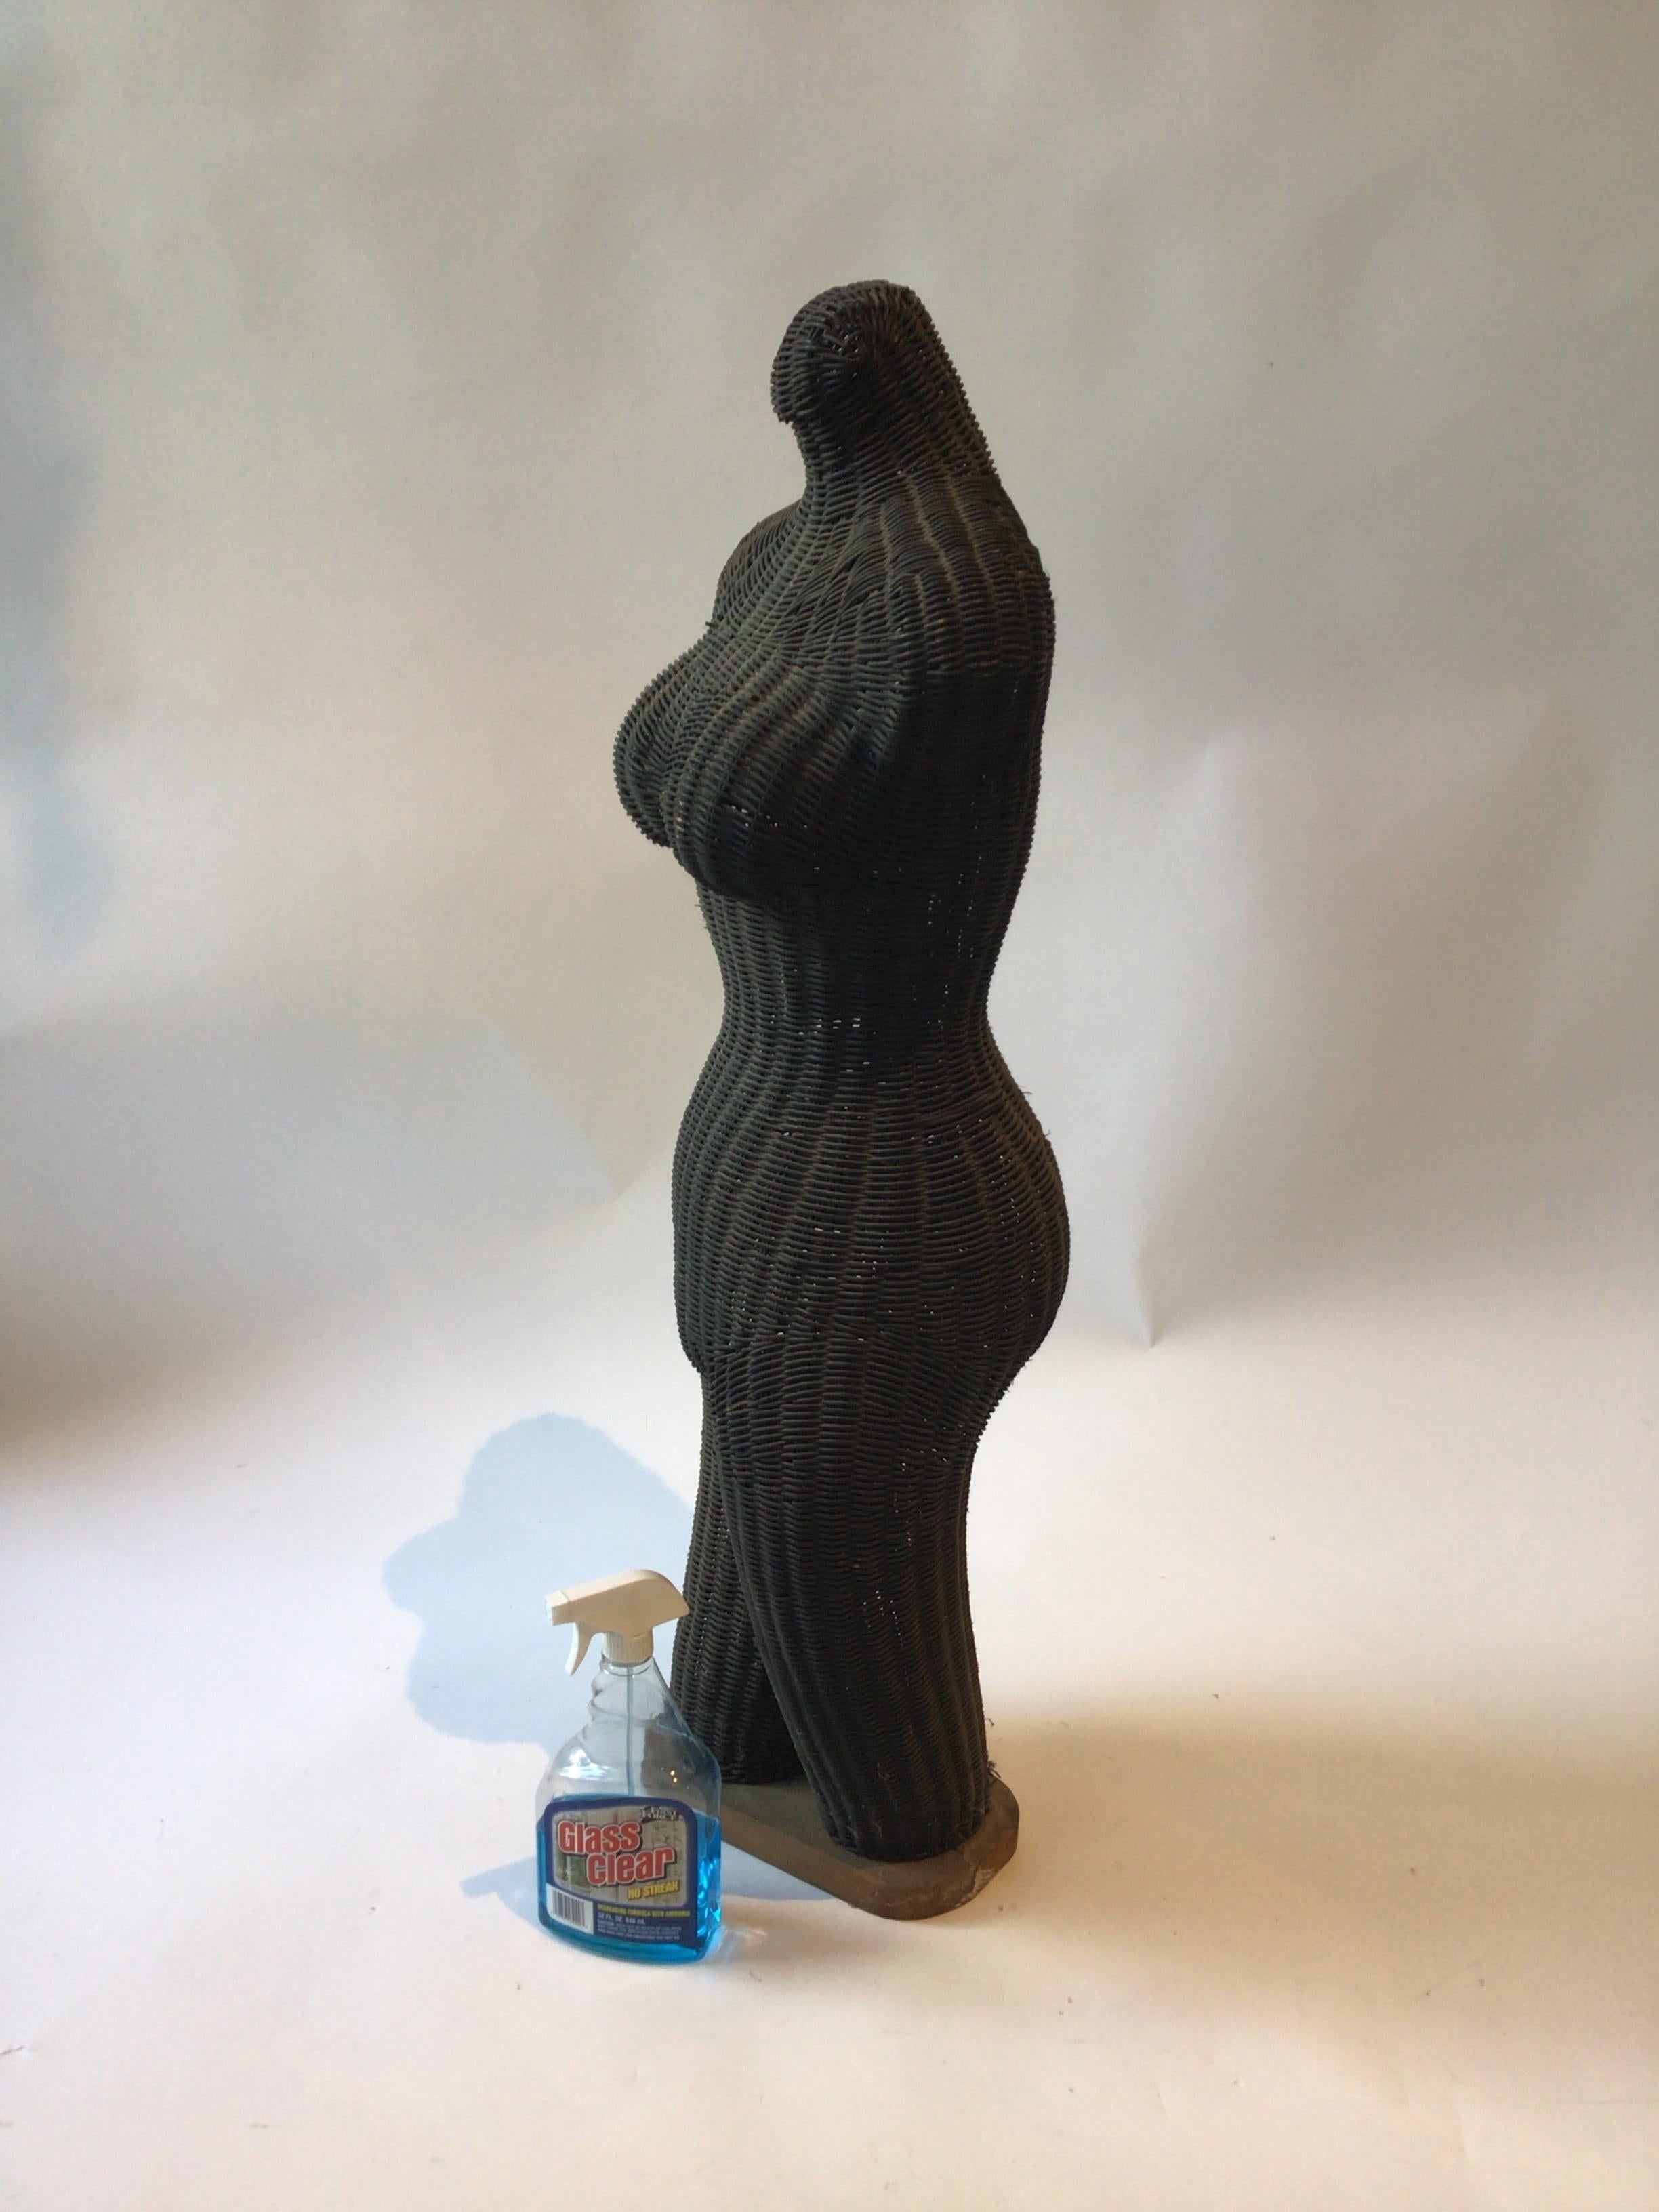 sculpture en osier des années 1960 représentant une femme nue.